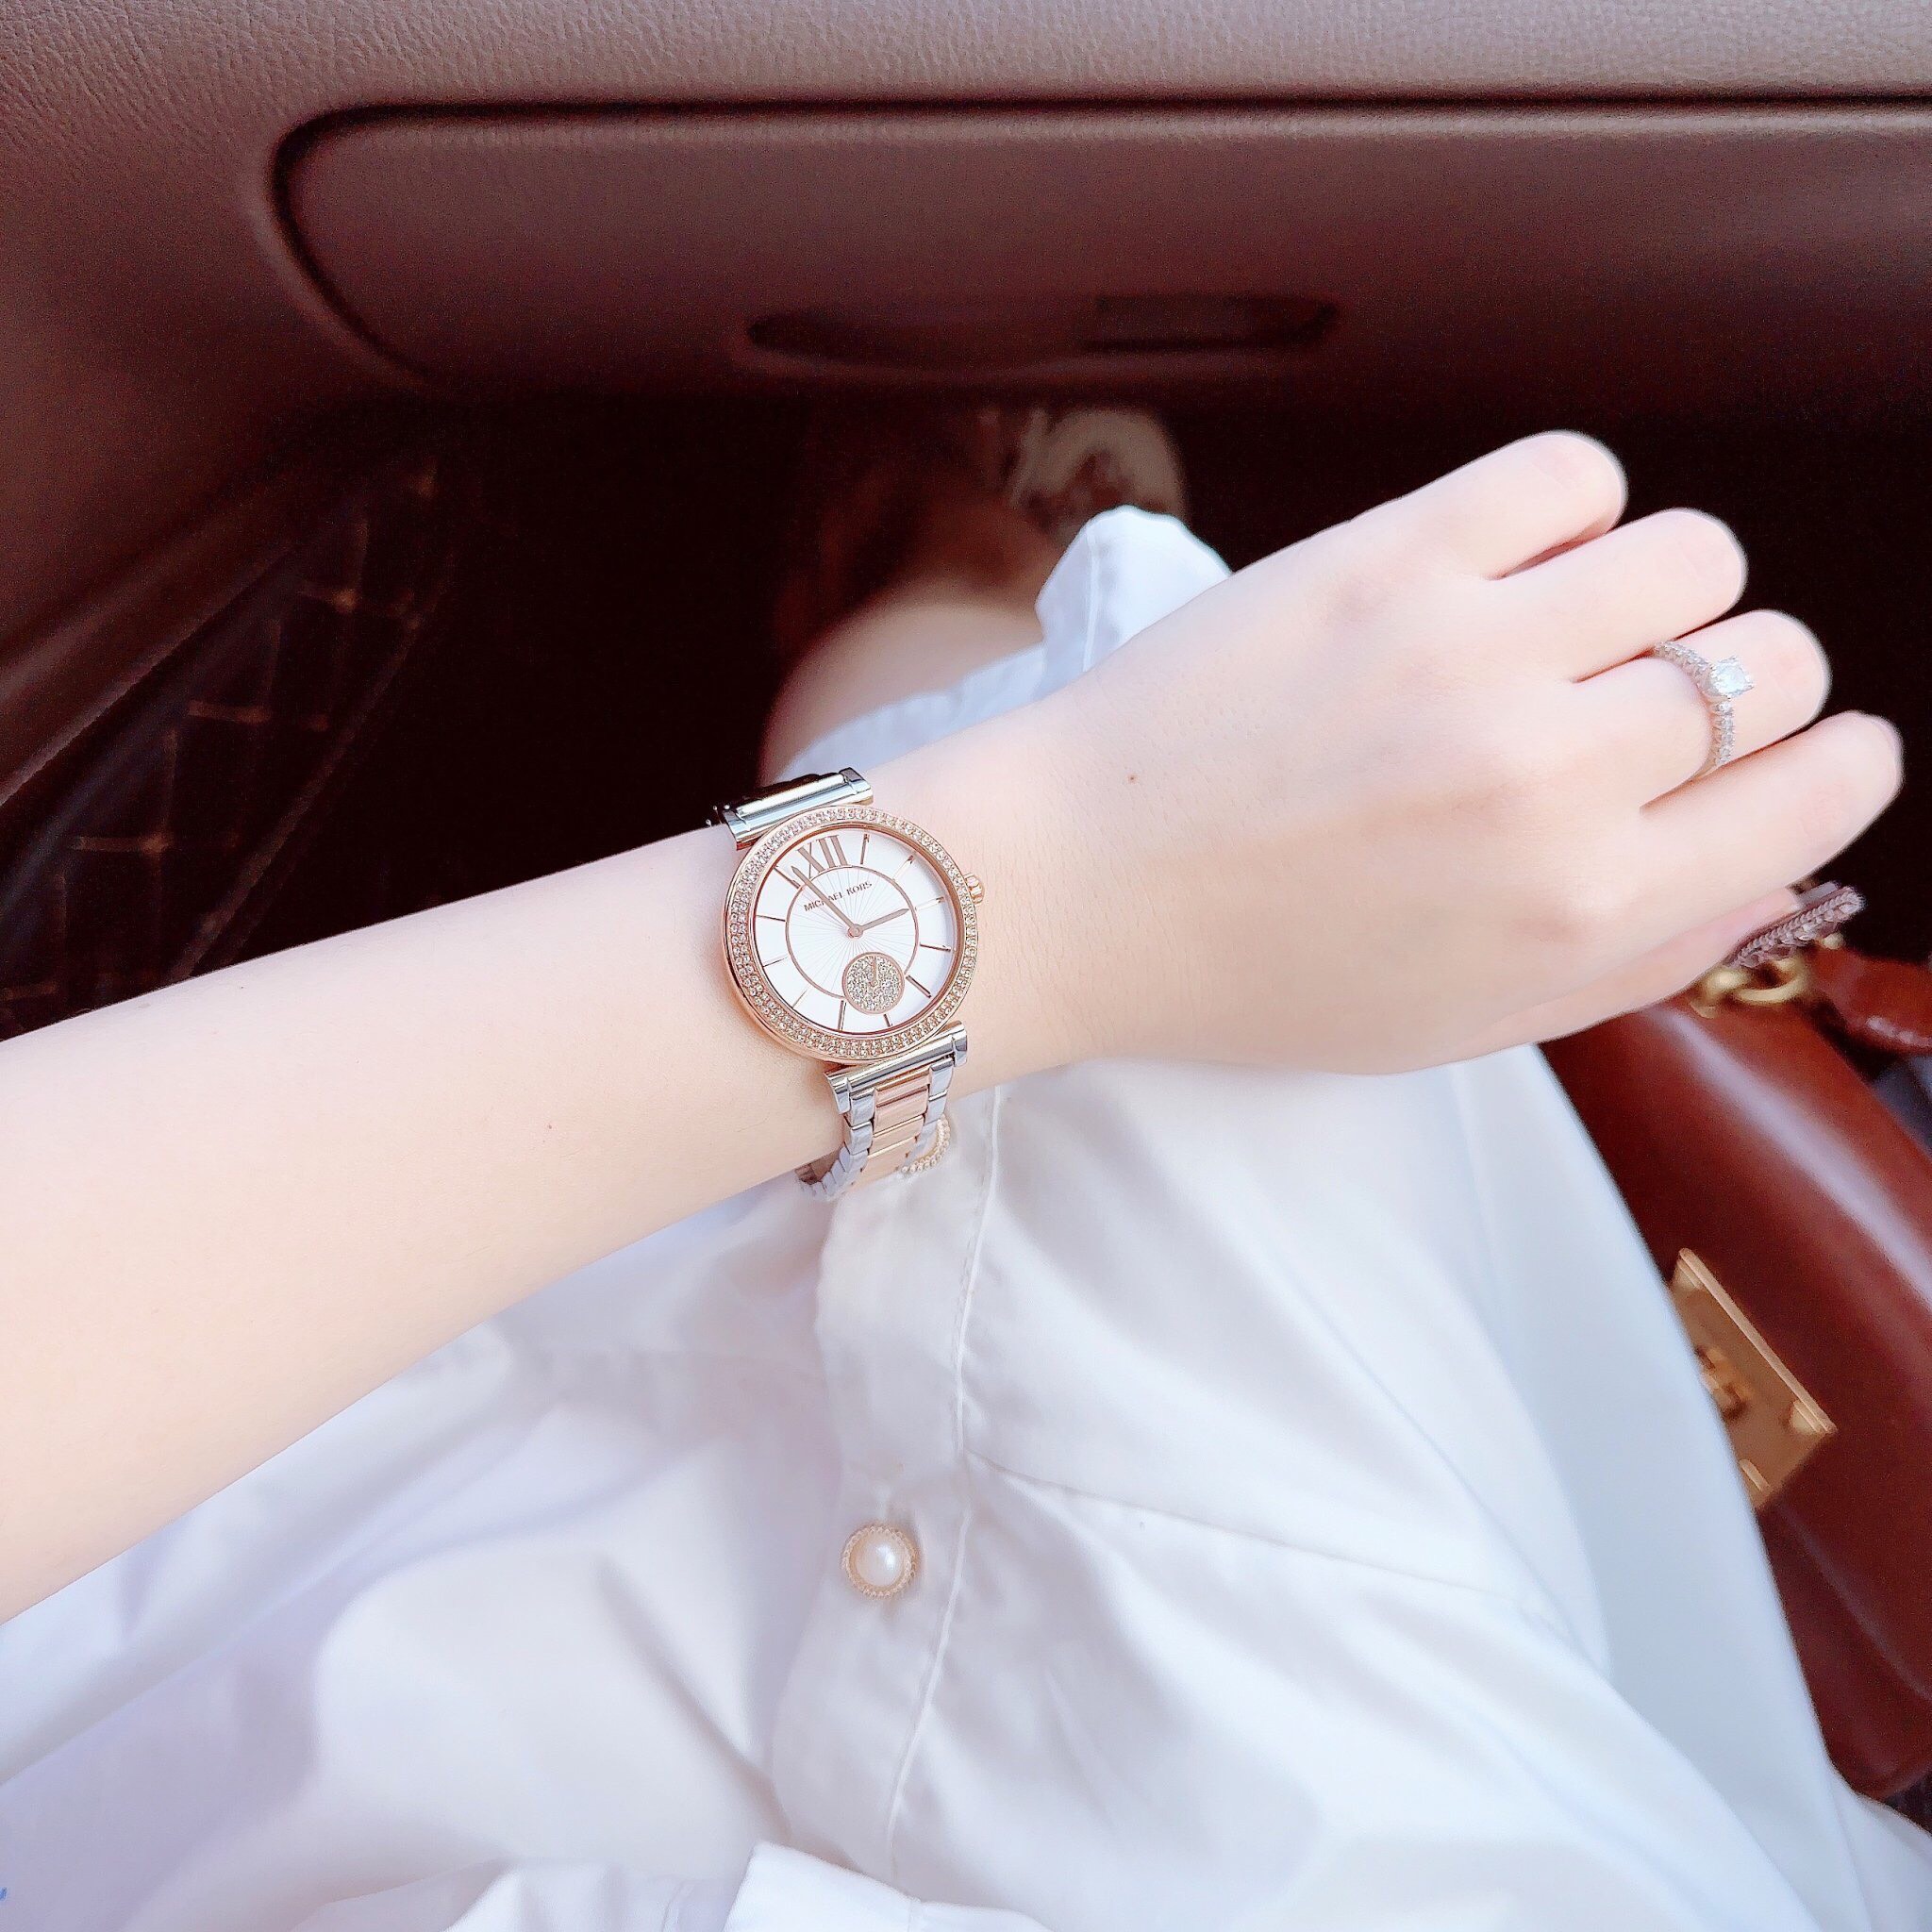 Đồng hồ Nữ Michael Kors mẫu mới sáng và đẹp với viền đính đá quý lấp lánh